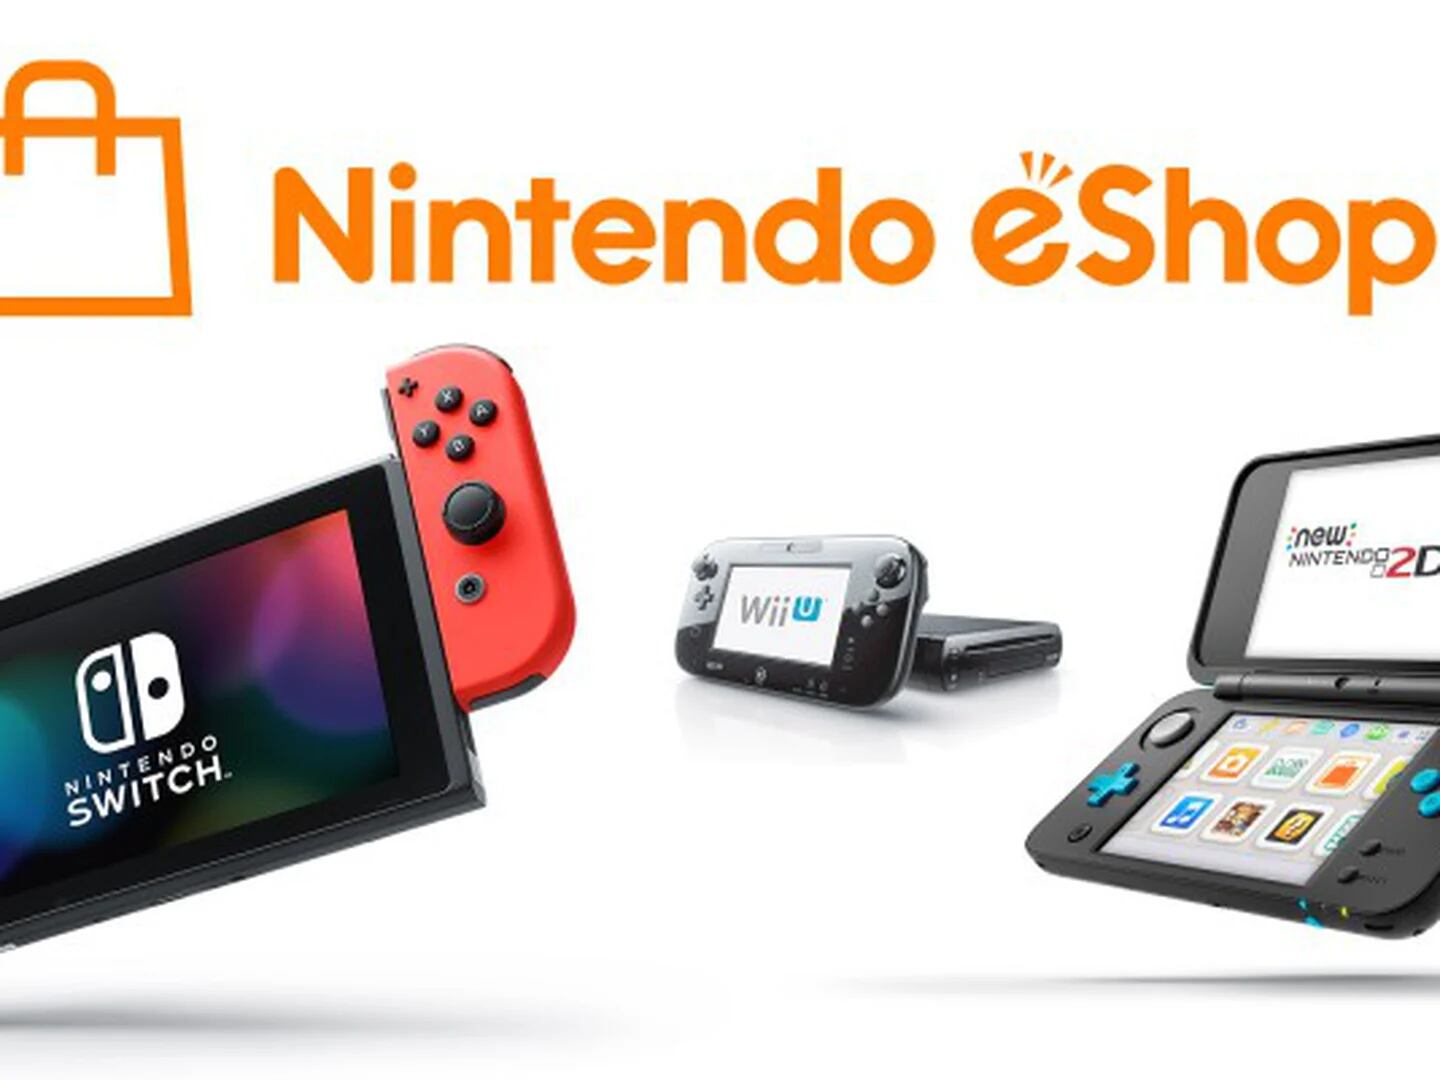 unocero - Nintendo cerrará las eShop para estas dos consolas en